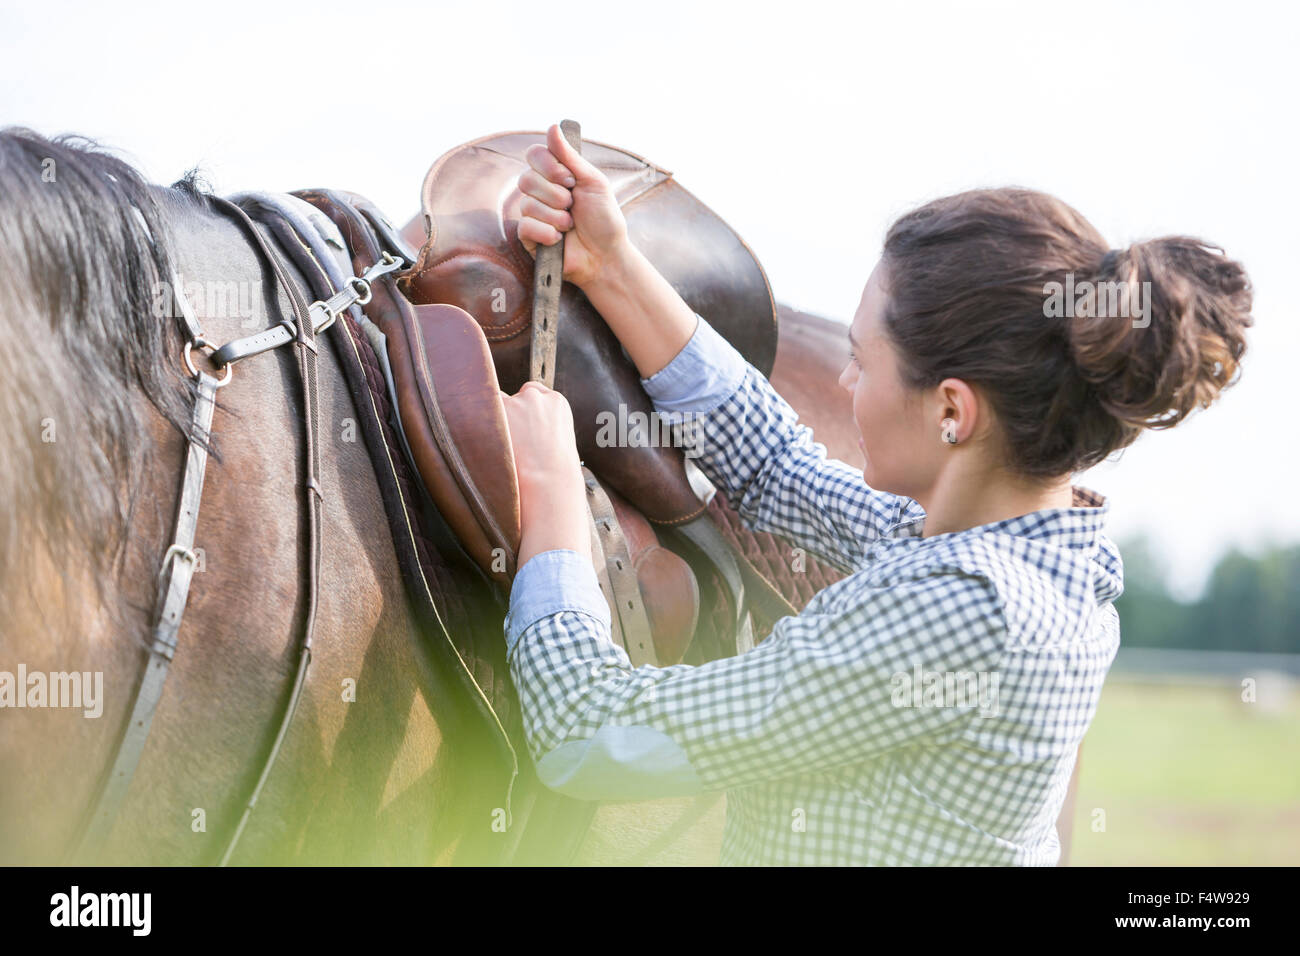 Serrant femme selle de cheval pour l'équitation Banque D'Images